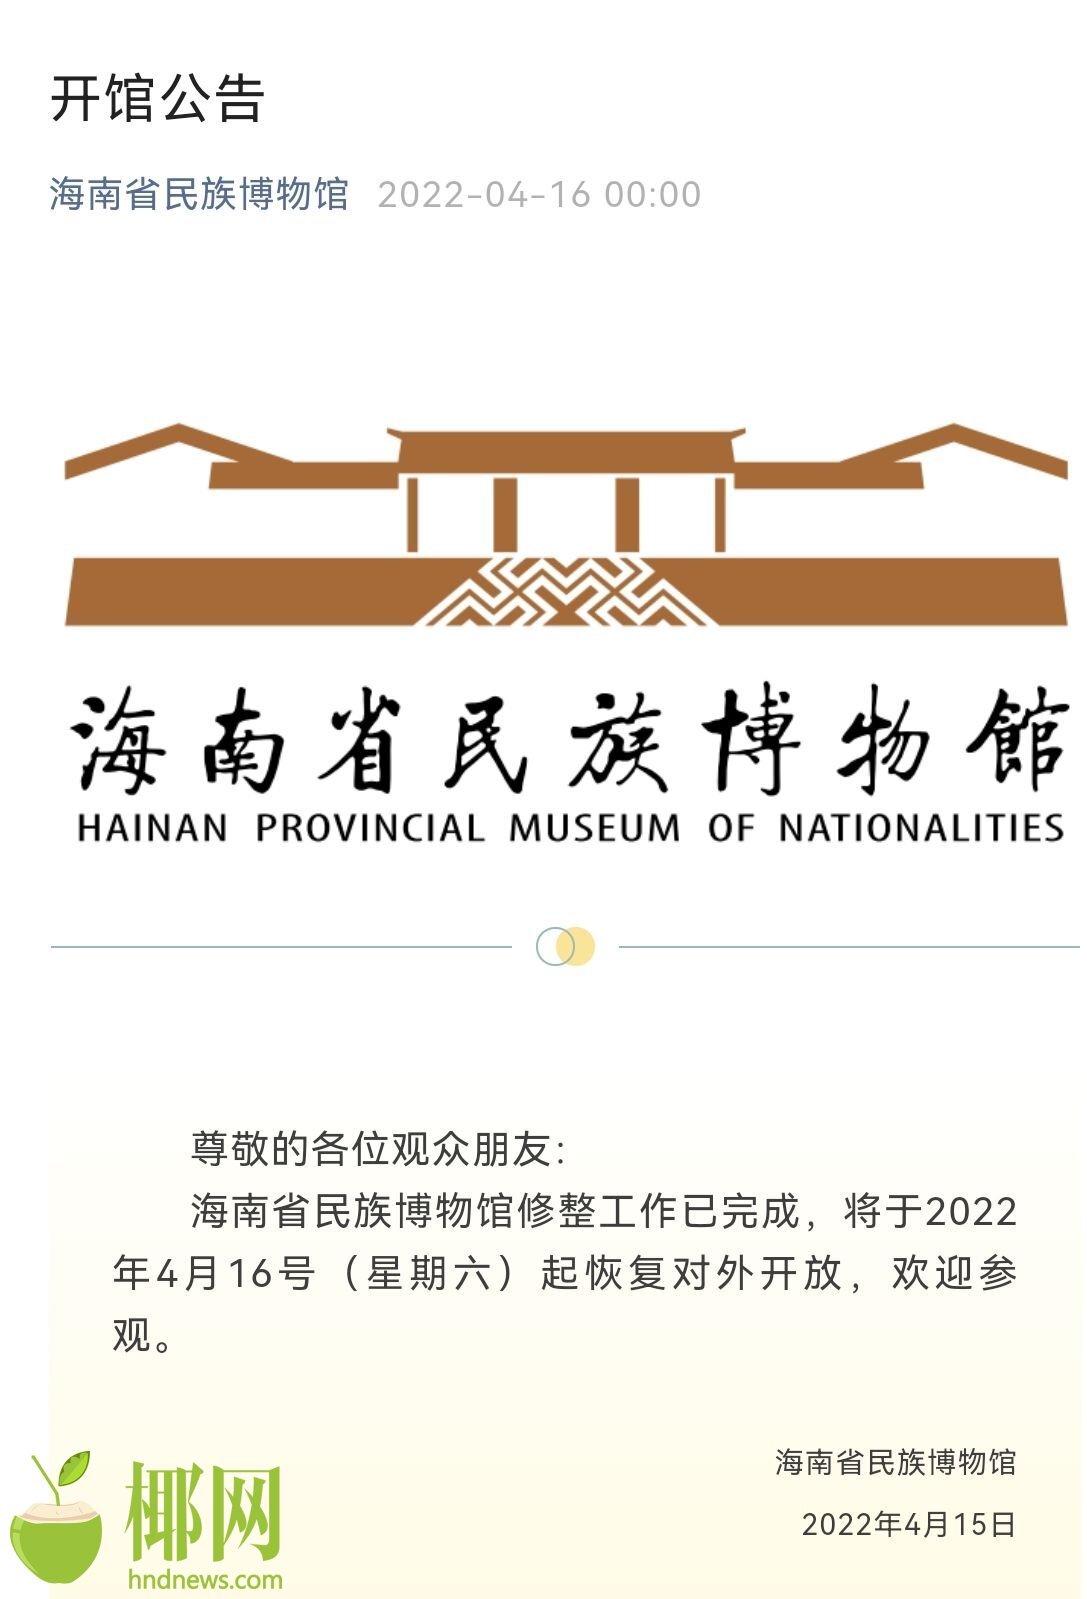 海南省民族博物馆16日起恢复对外开放